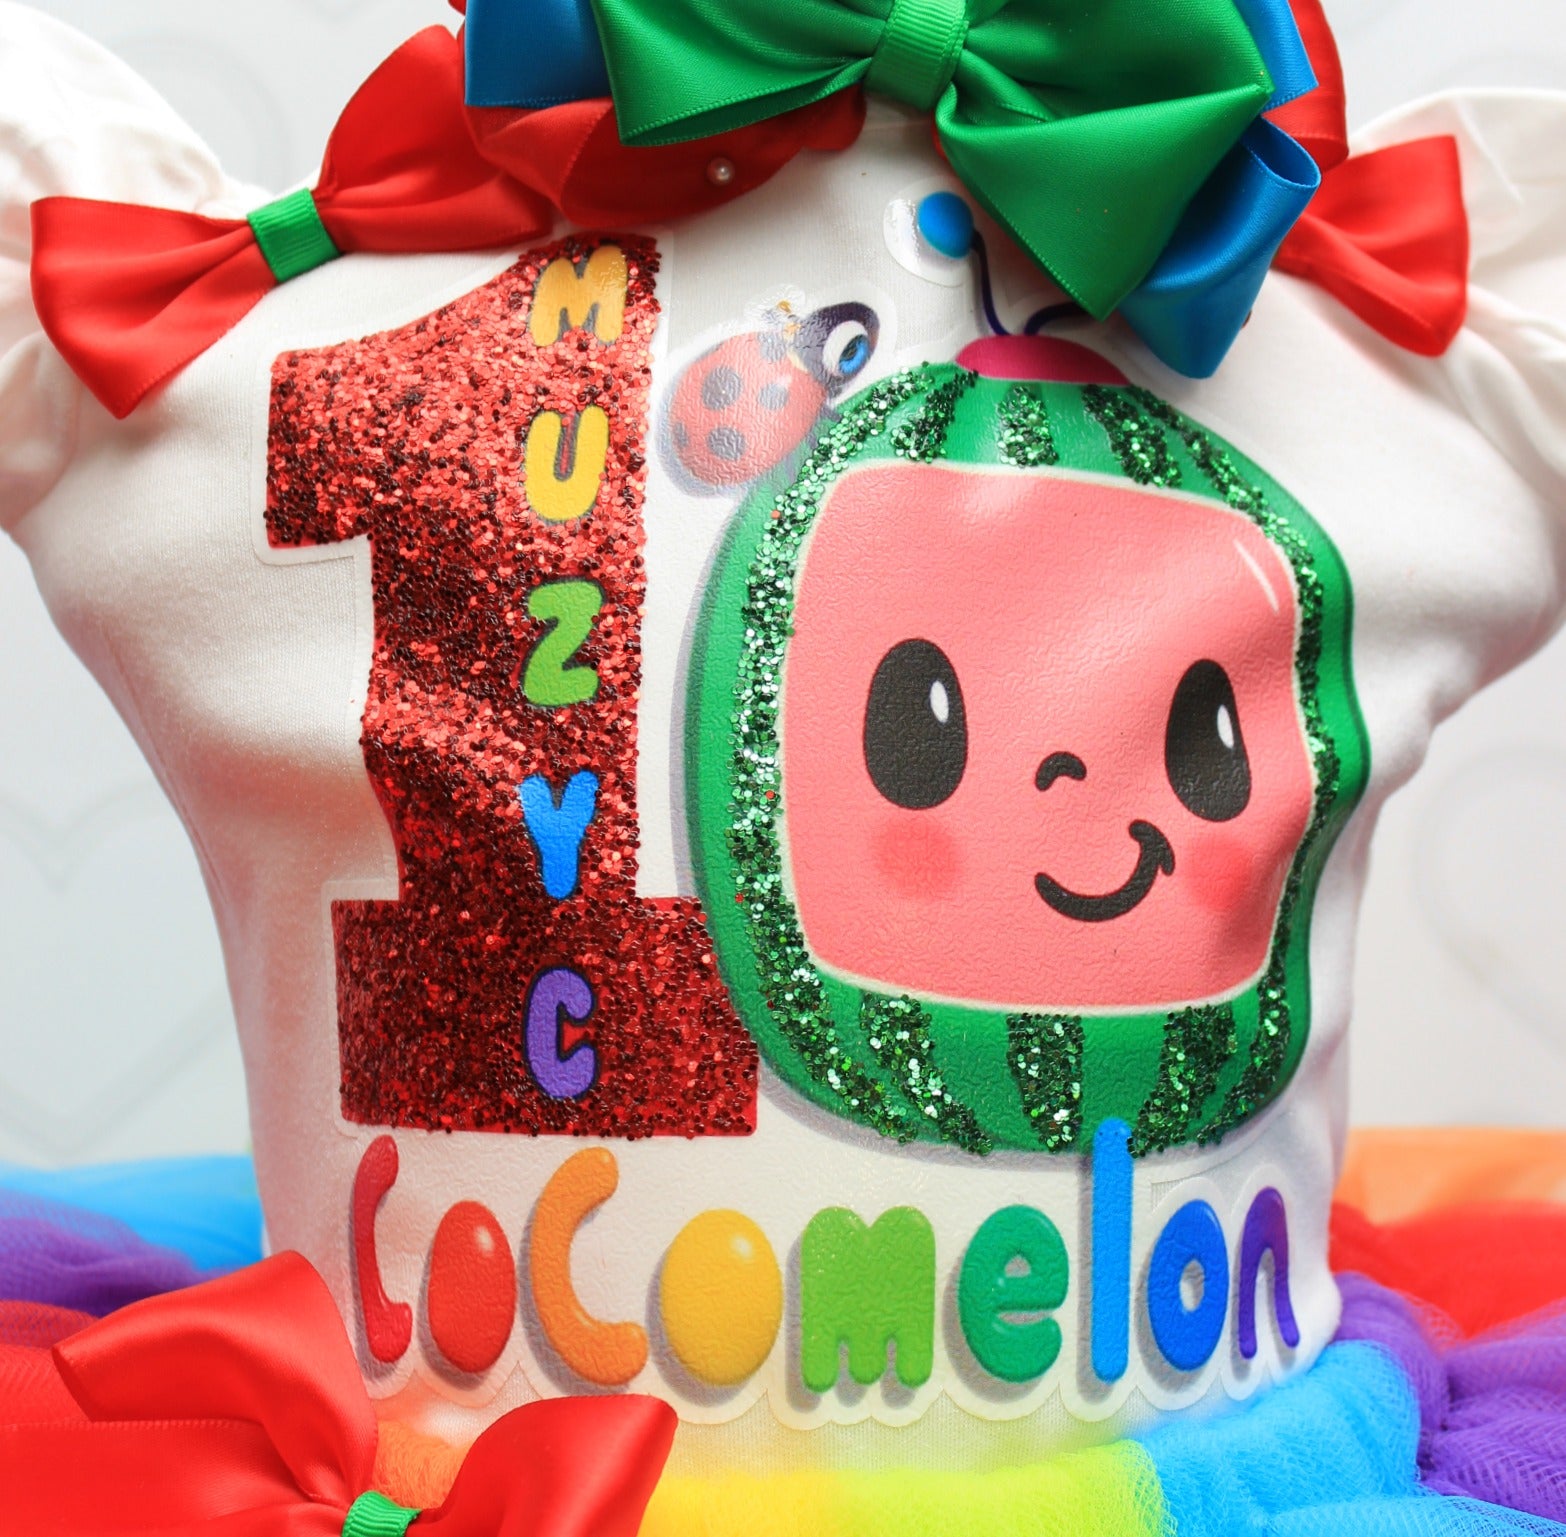 Cocomelon tutu set-Cocomelon outfit-Cocomelon dress